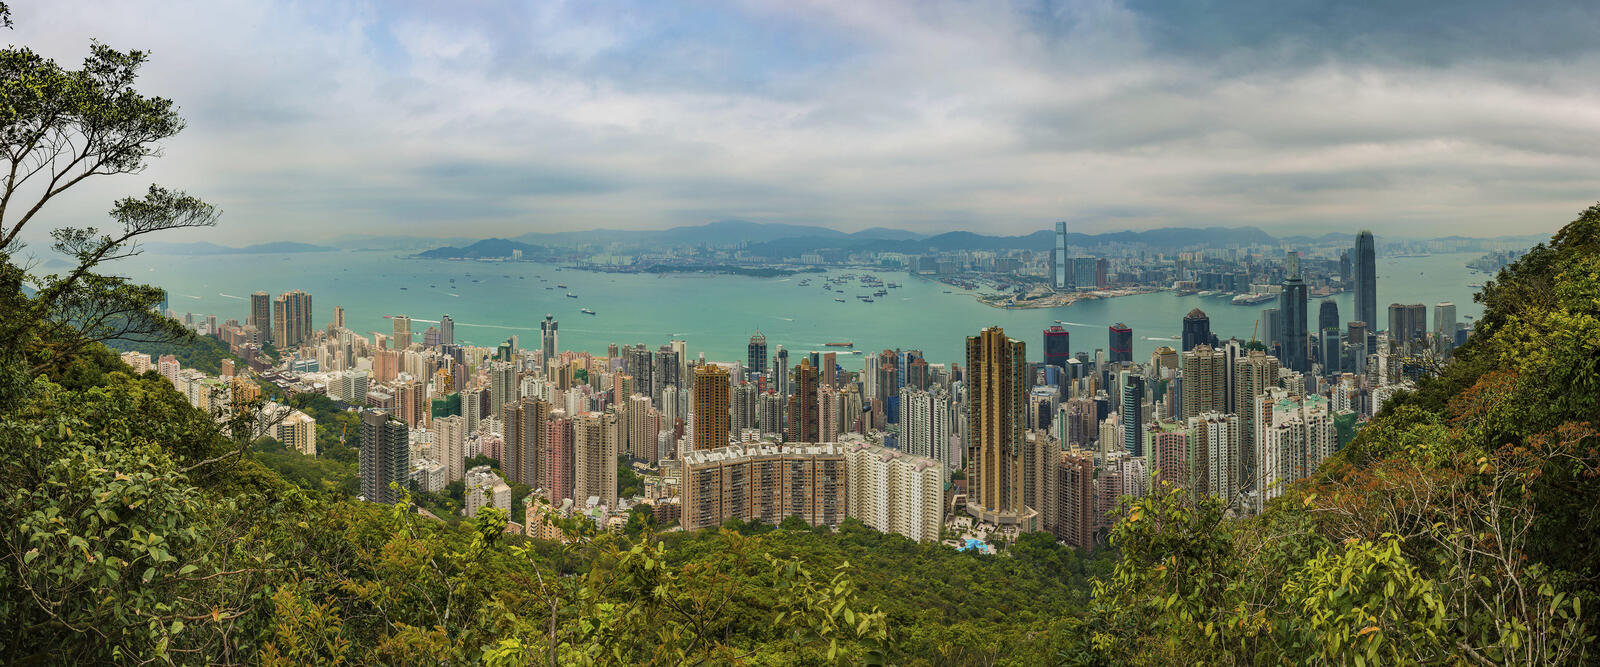 Обои панорама Гонконг Китай на рабочий стол